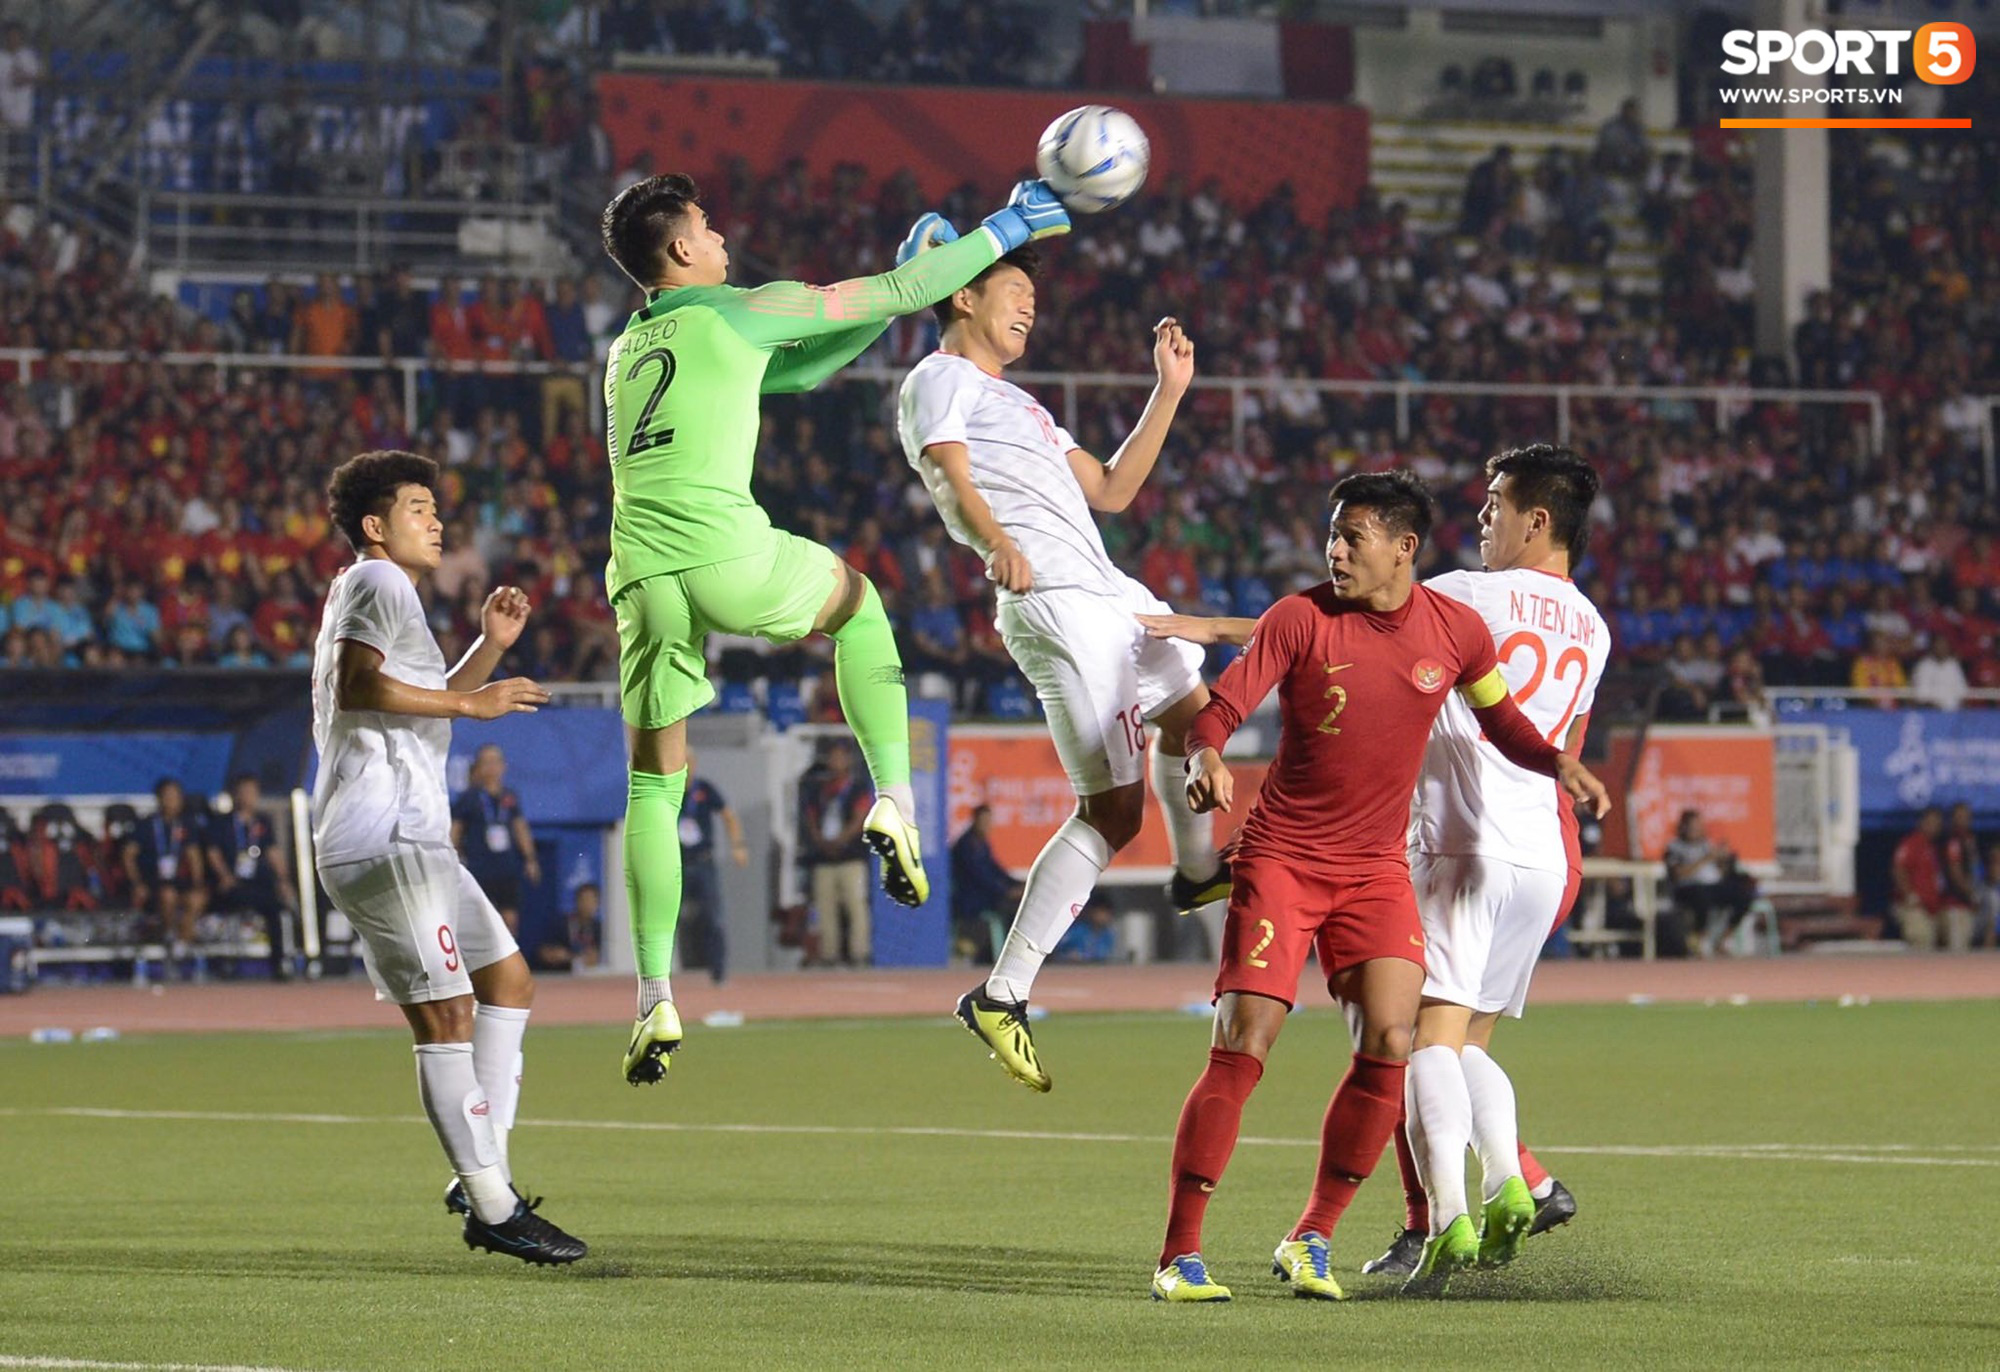 Trợ lý Lee Young-jin: Cầu thủ U22 Việt Nam có màn trình diễn xứng đáng giành HCV - Ảnh 2.